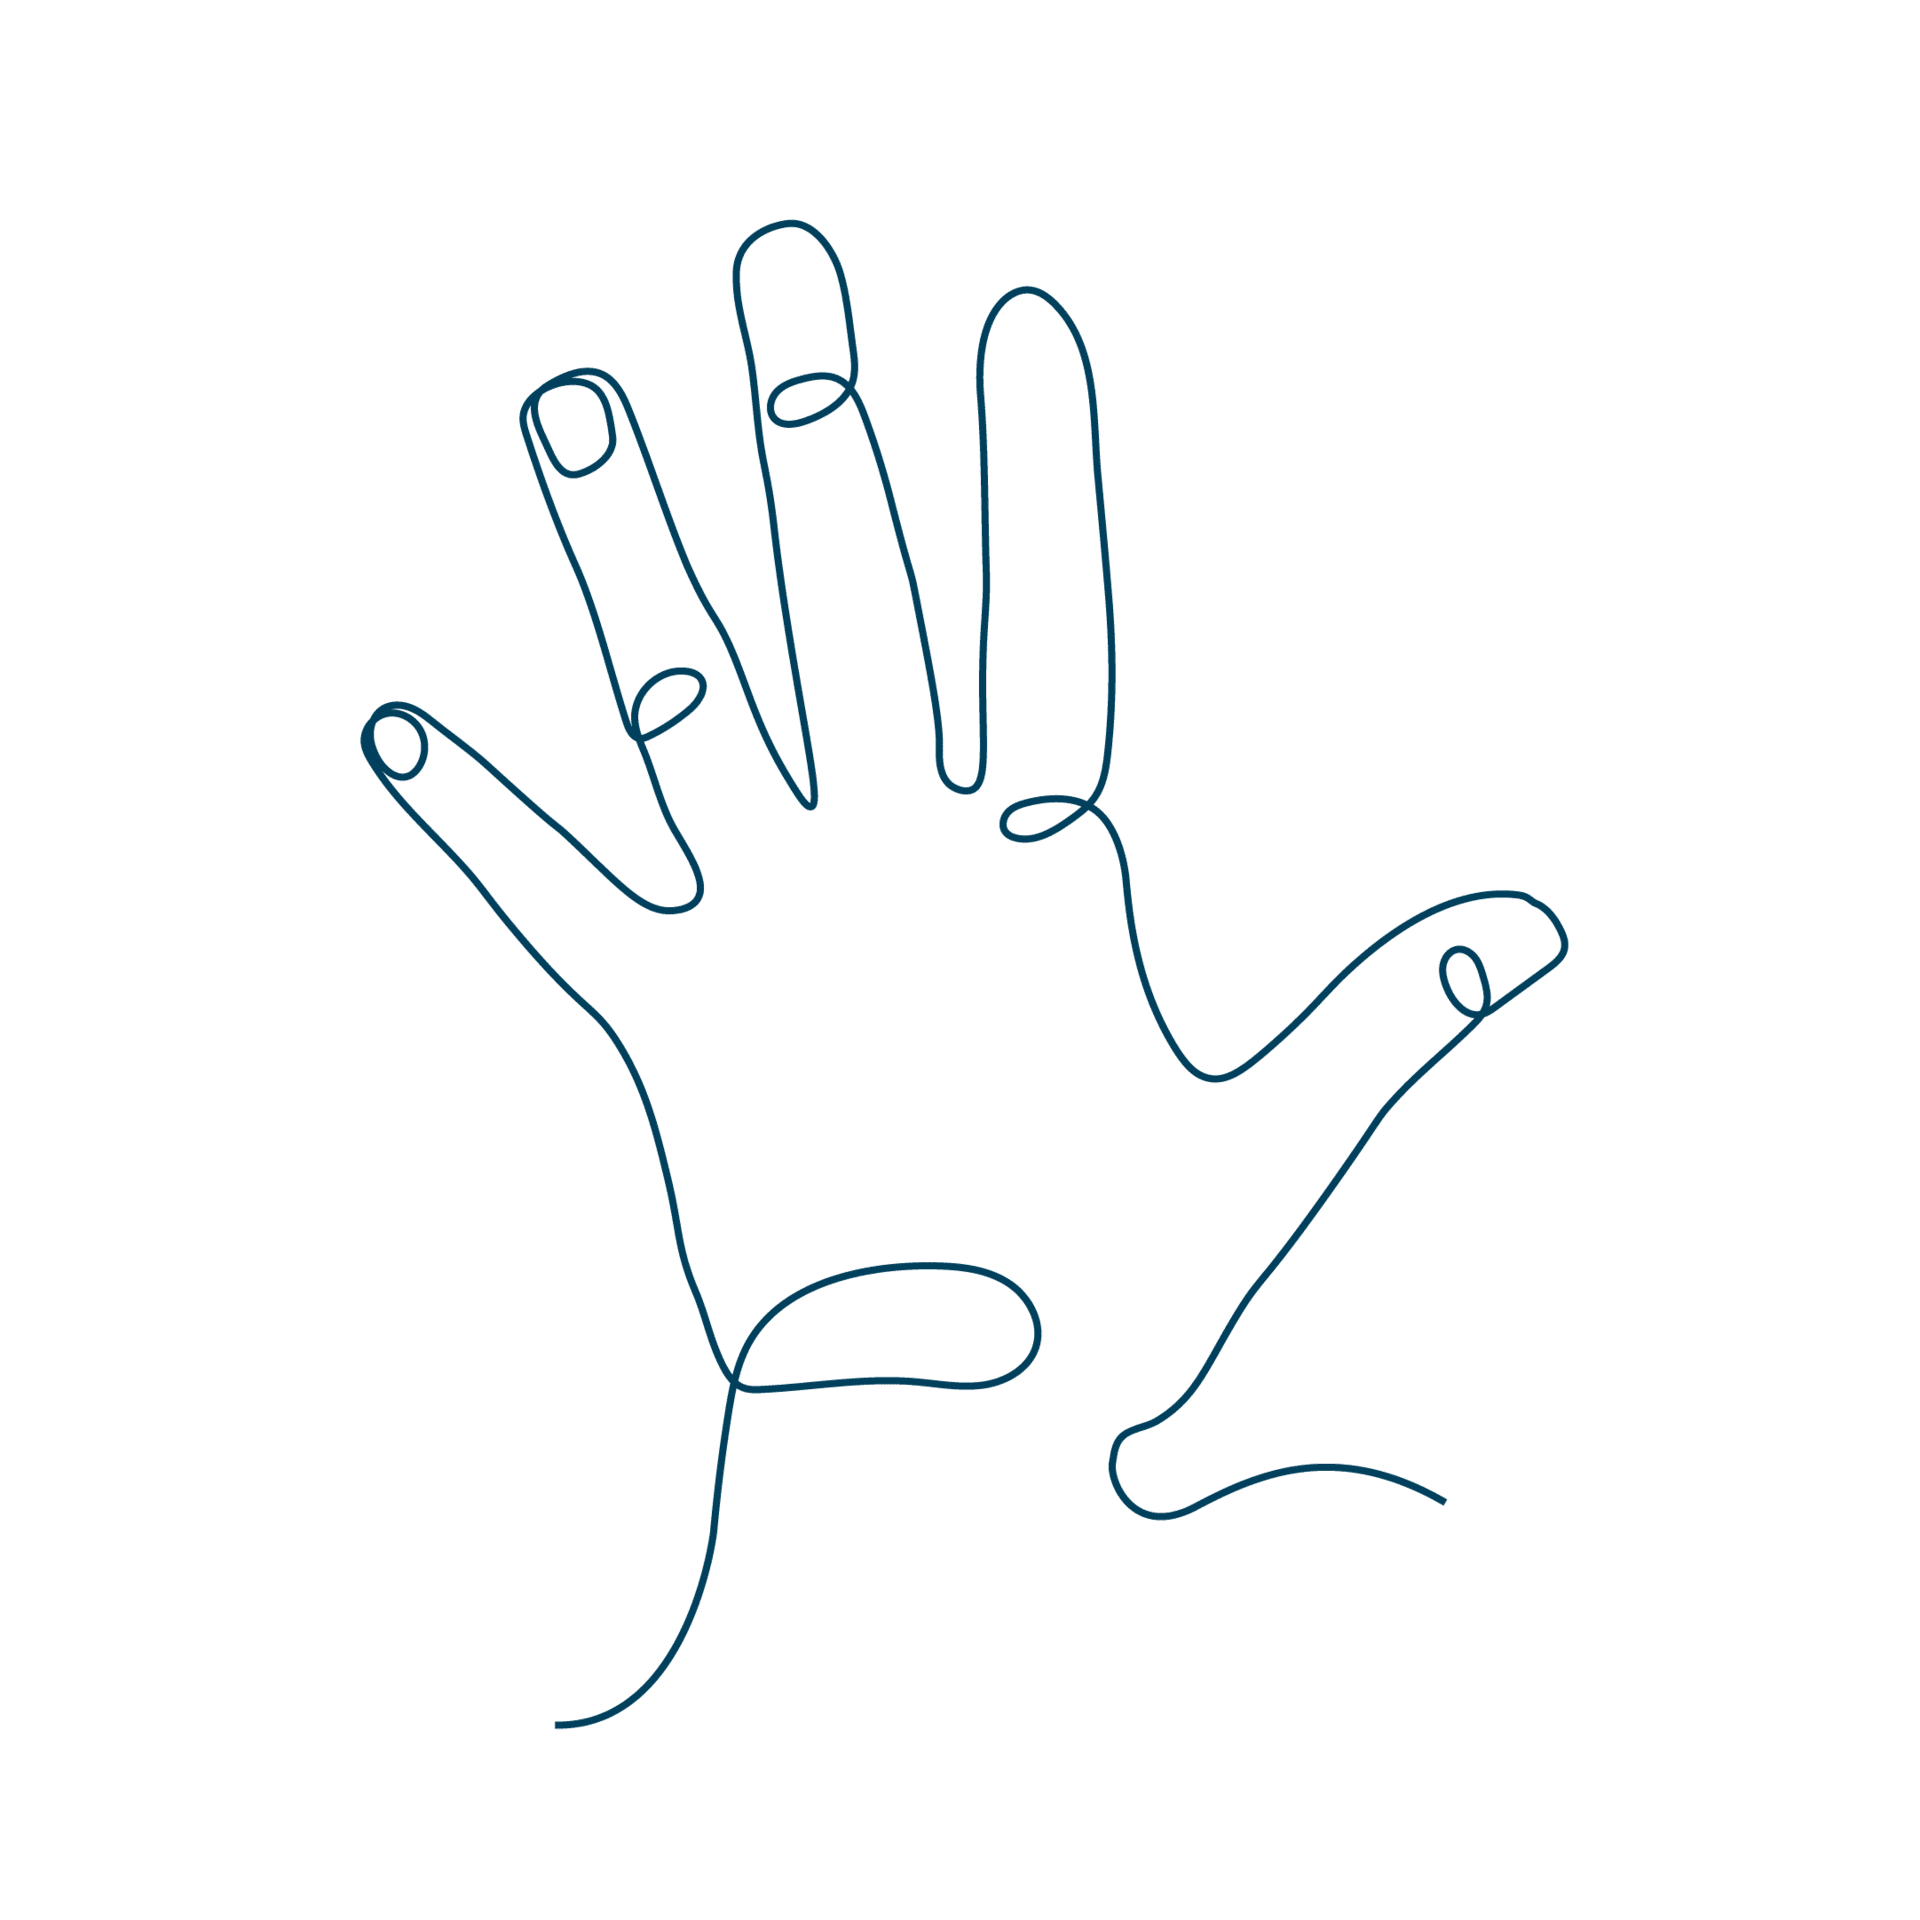 Diese Line-Art-Zeichnung einer Hand bildet den Link zur Seite mit Hand-Produkten.